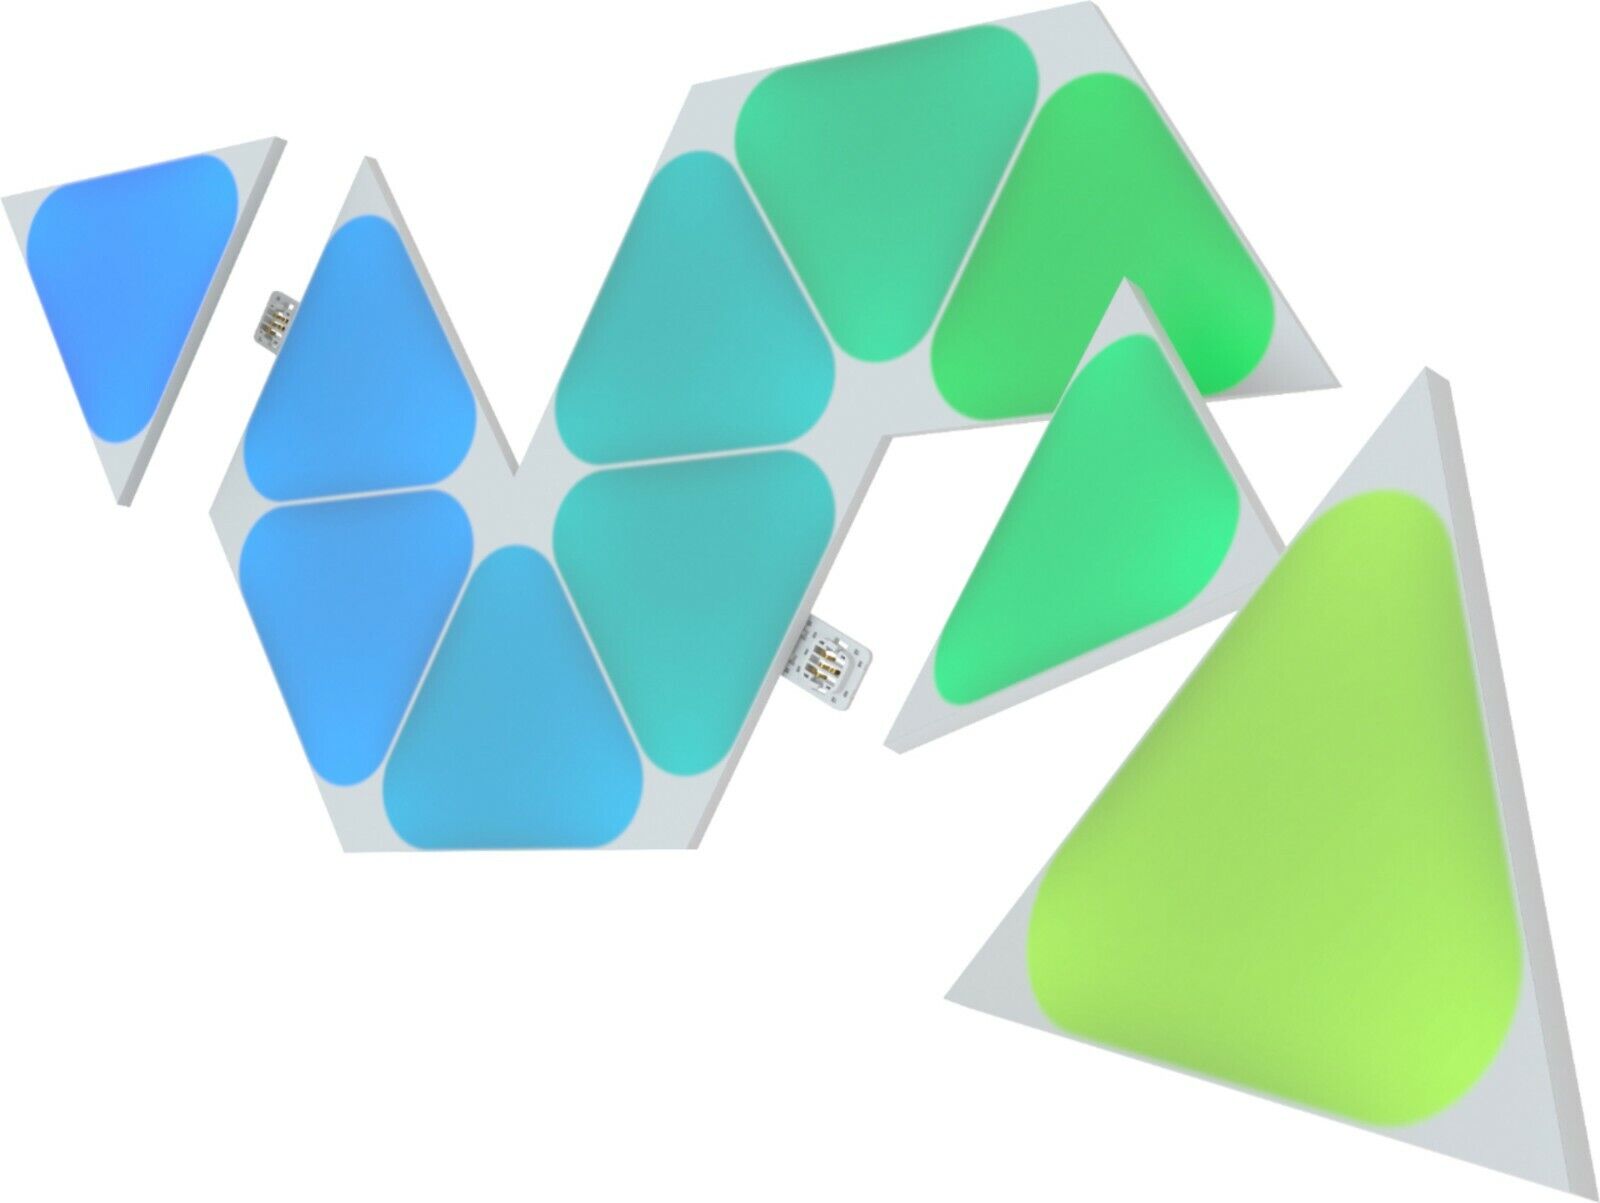 Nanoleaf Shapes Mini Triangles Multicolor Light Panel Expansion Kit - 10  Pack 840102701630 | eBay